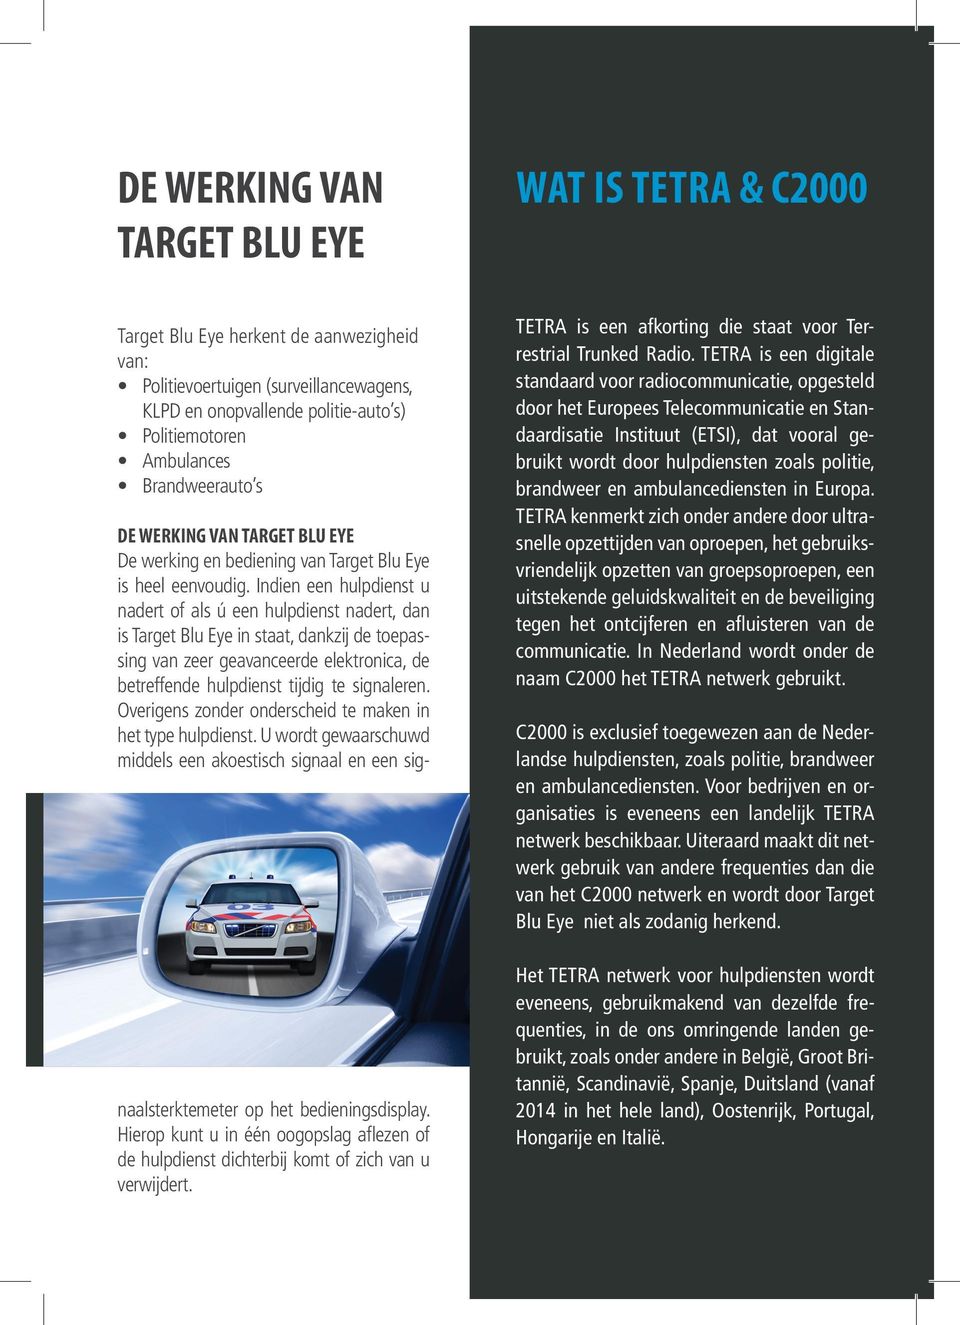 Indien een hulpdienst u nadert of als ú een hulpdienst nadert, dan is Target Blu Eye in staat, dankzij de toepassing van zeer geavanceerde elektronica, de betreffende hulpdienst tijdig te signaleren.